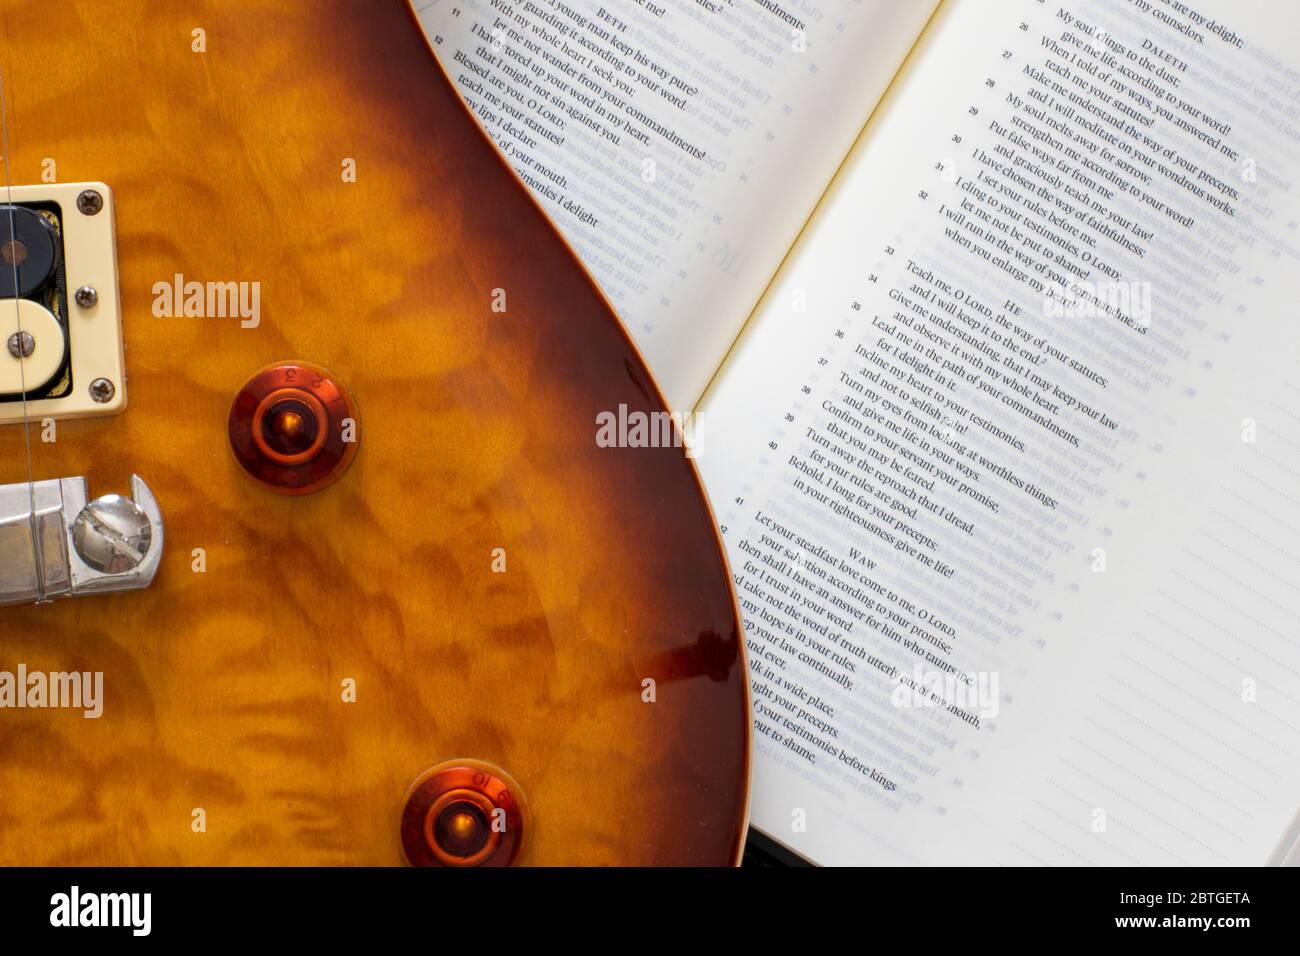 Una imagen de fondo para el papel pintado o el diseño artístico de una guitarra y la Biblia. Foto de stock